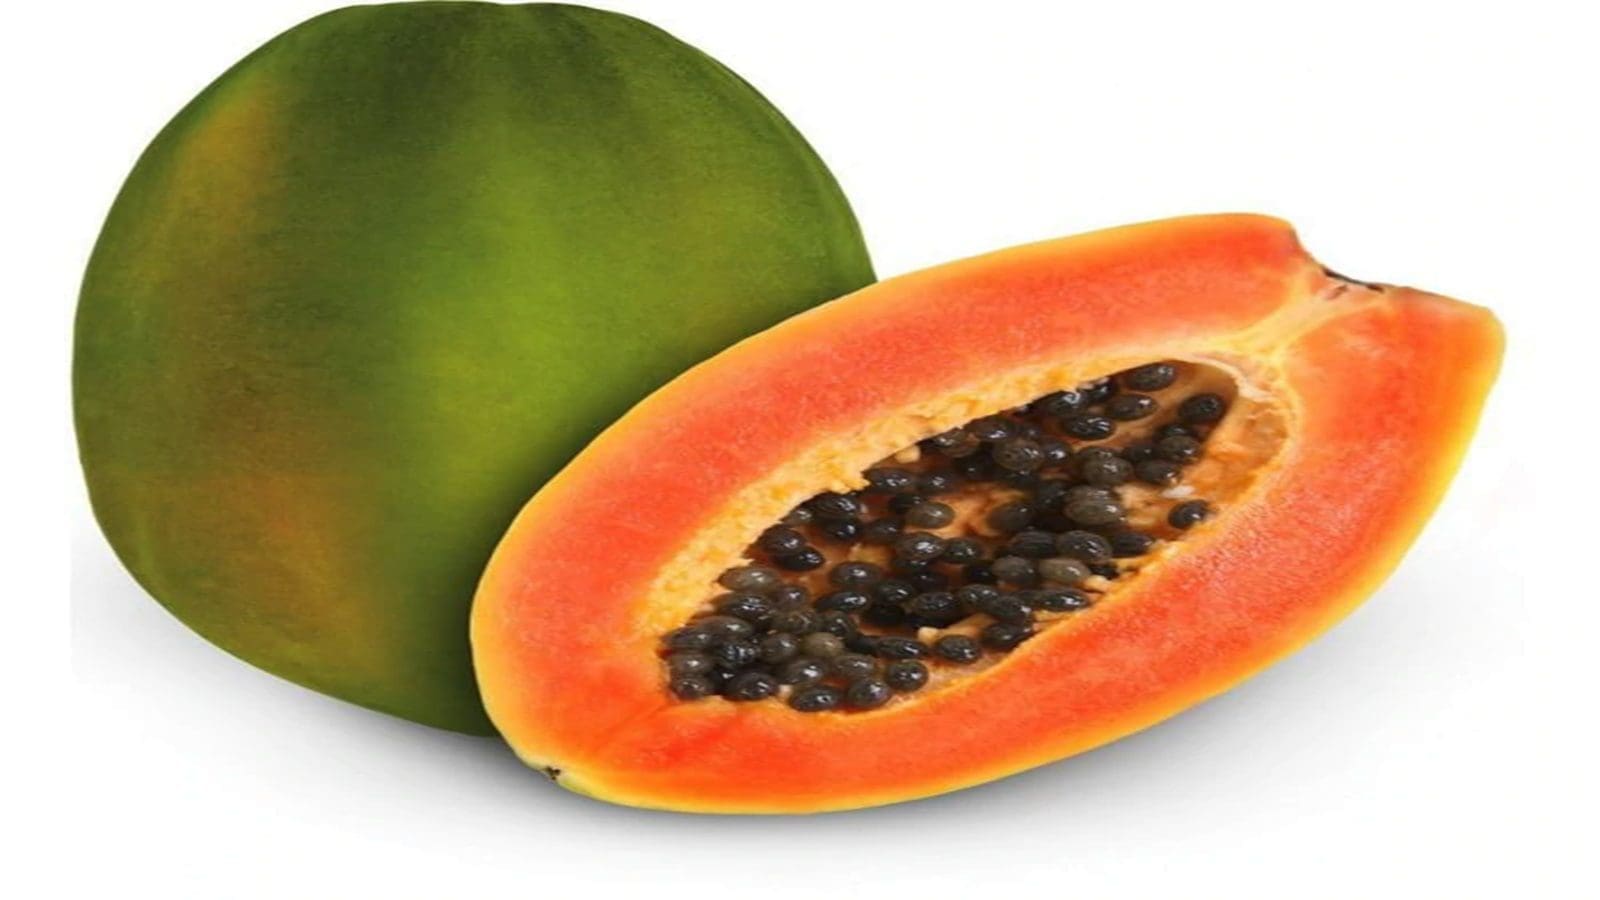 Kenya turns to biological control of papaya mealybug